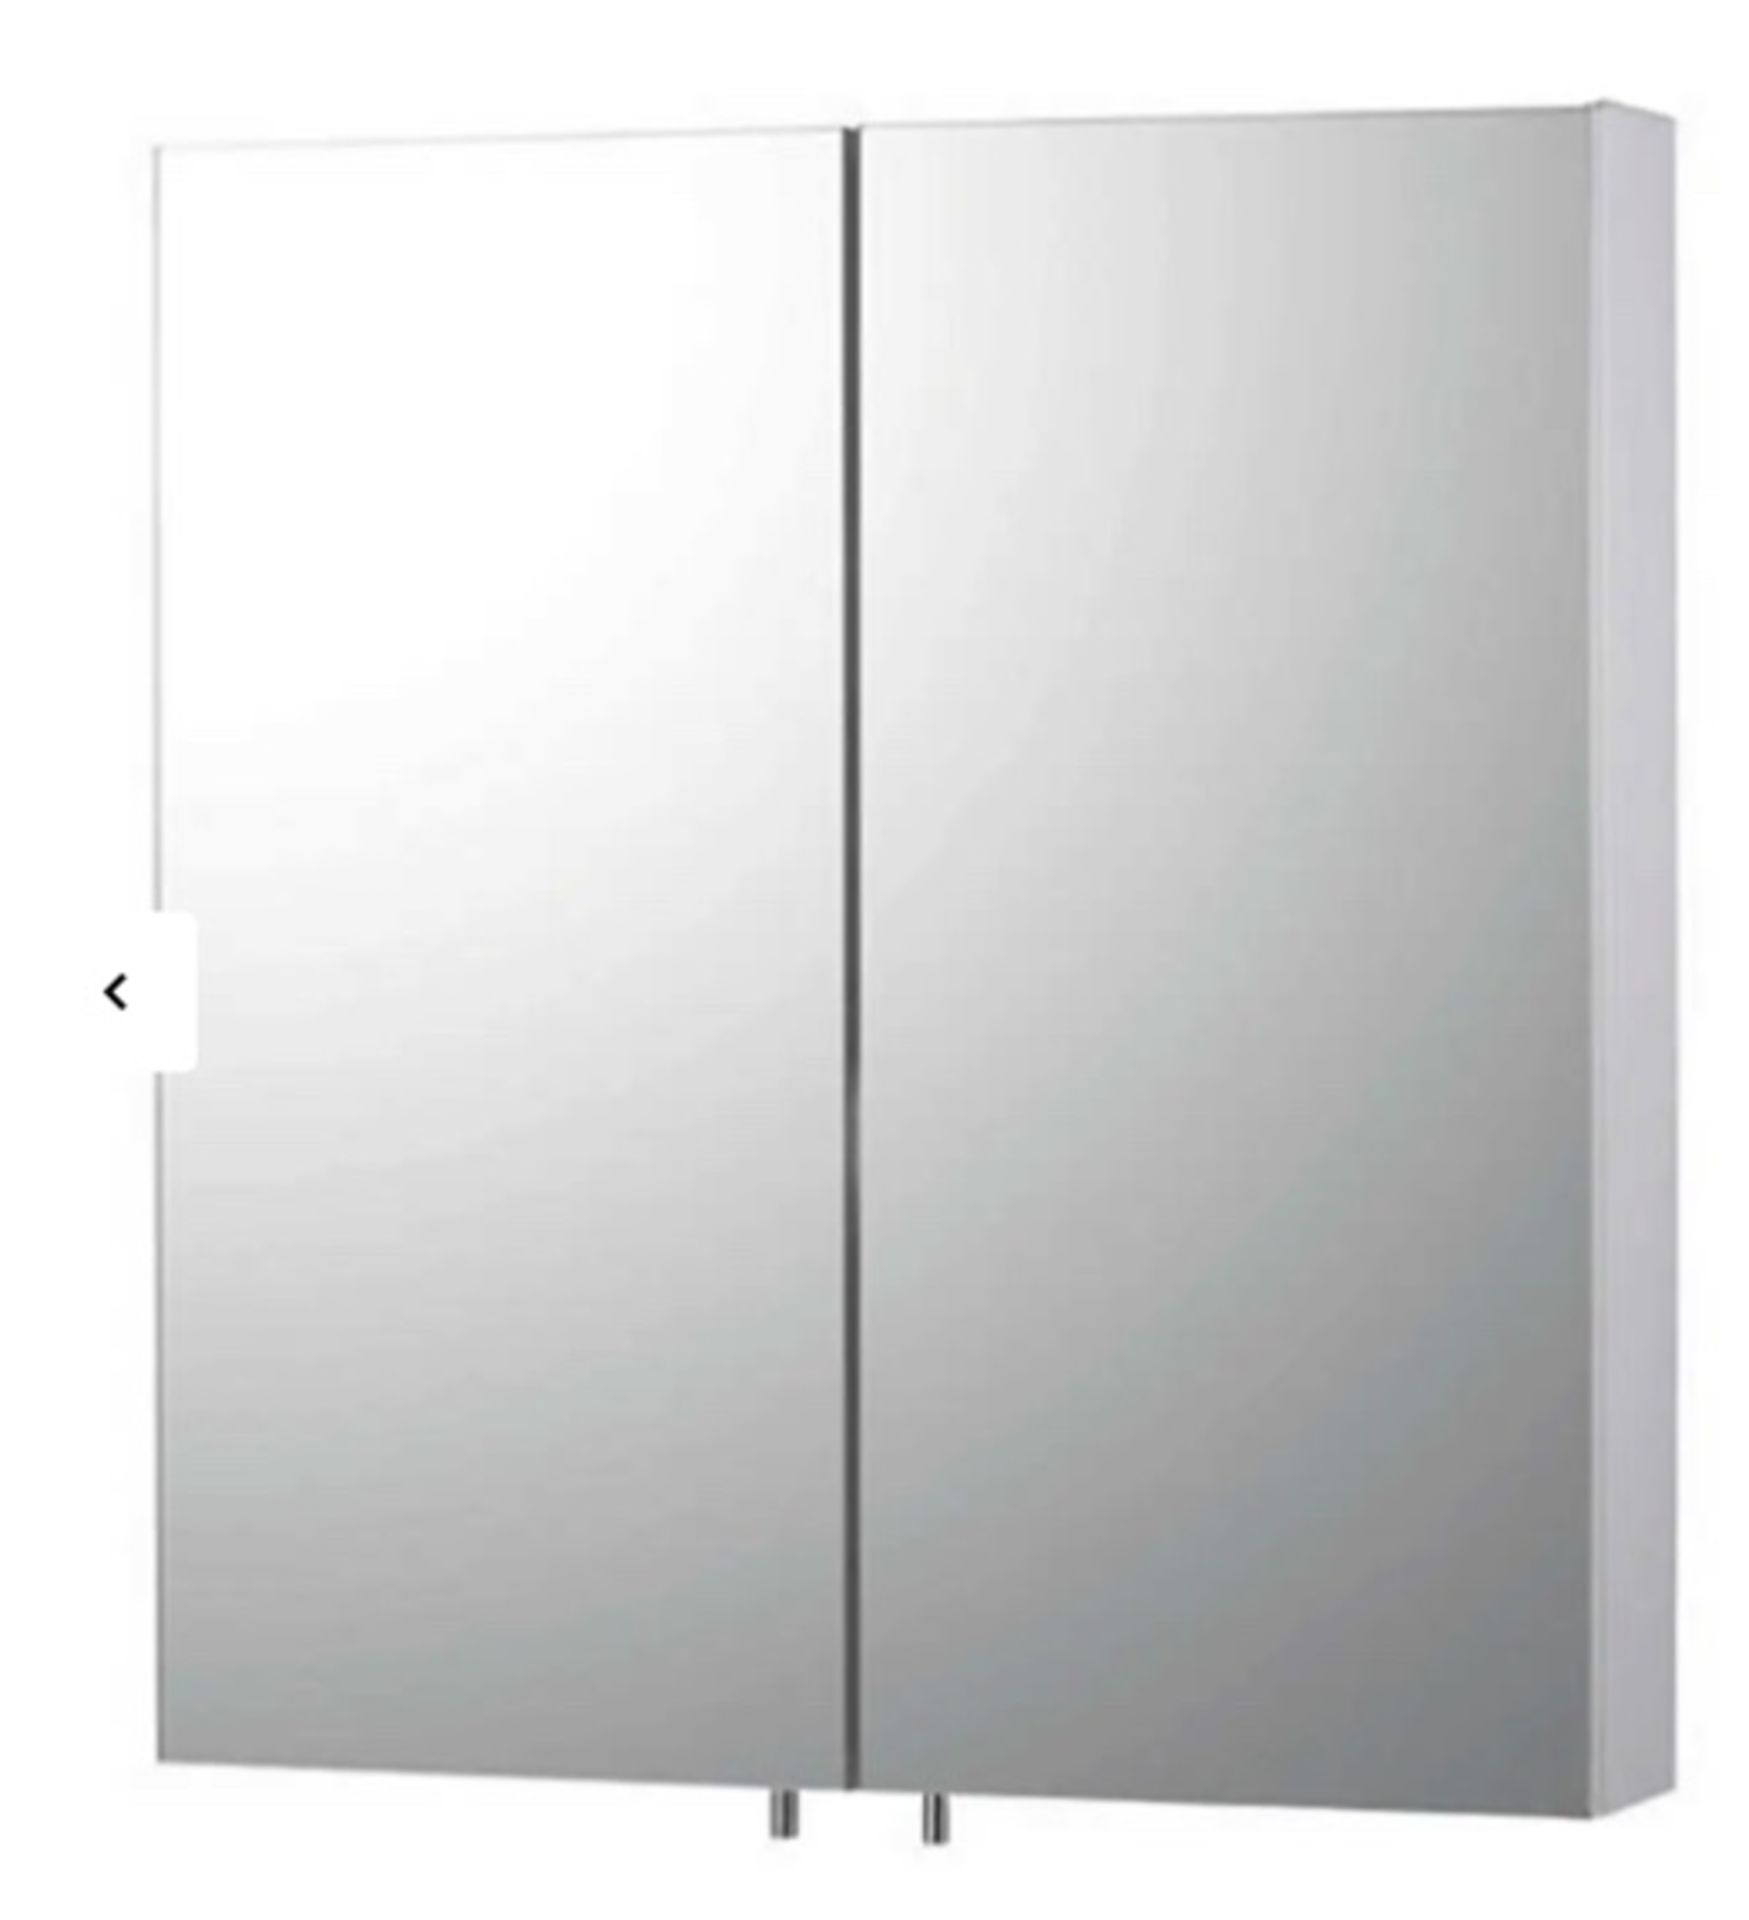 Brand New Boxed Stainless Steel Double Door Bathroom Mirror Cabinet RRP £75 **No Vat**